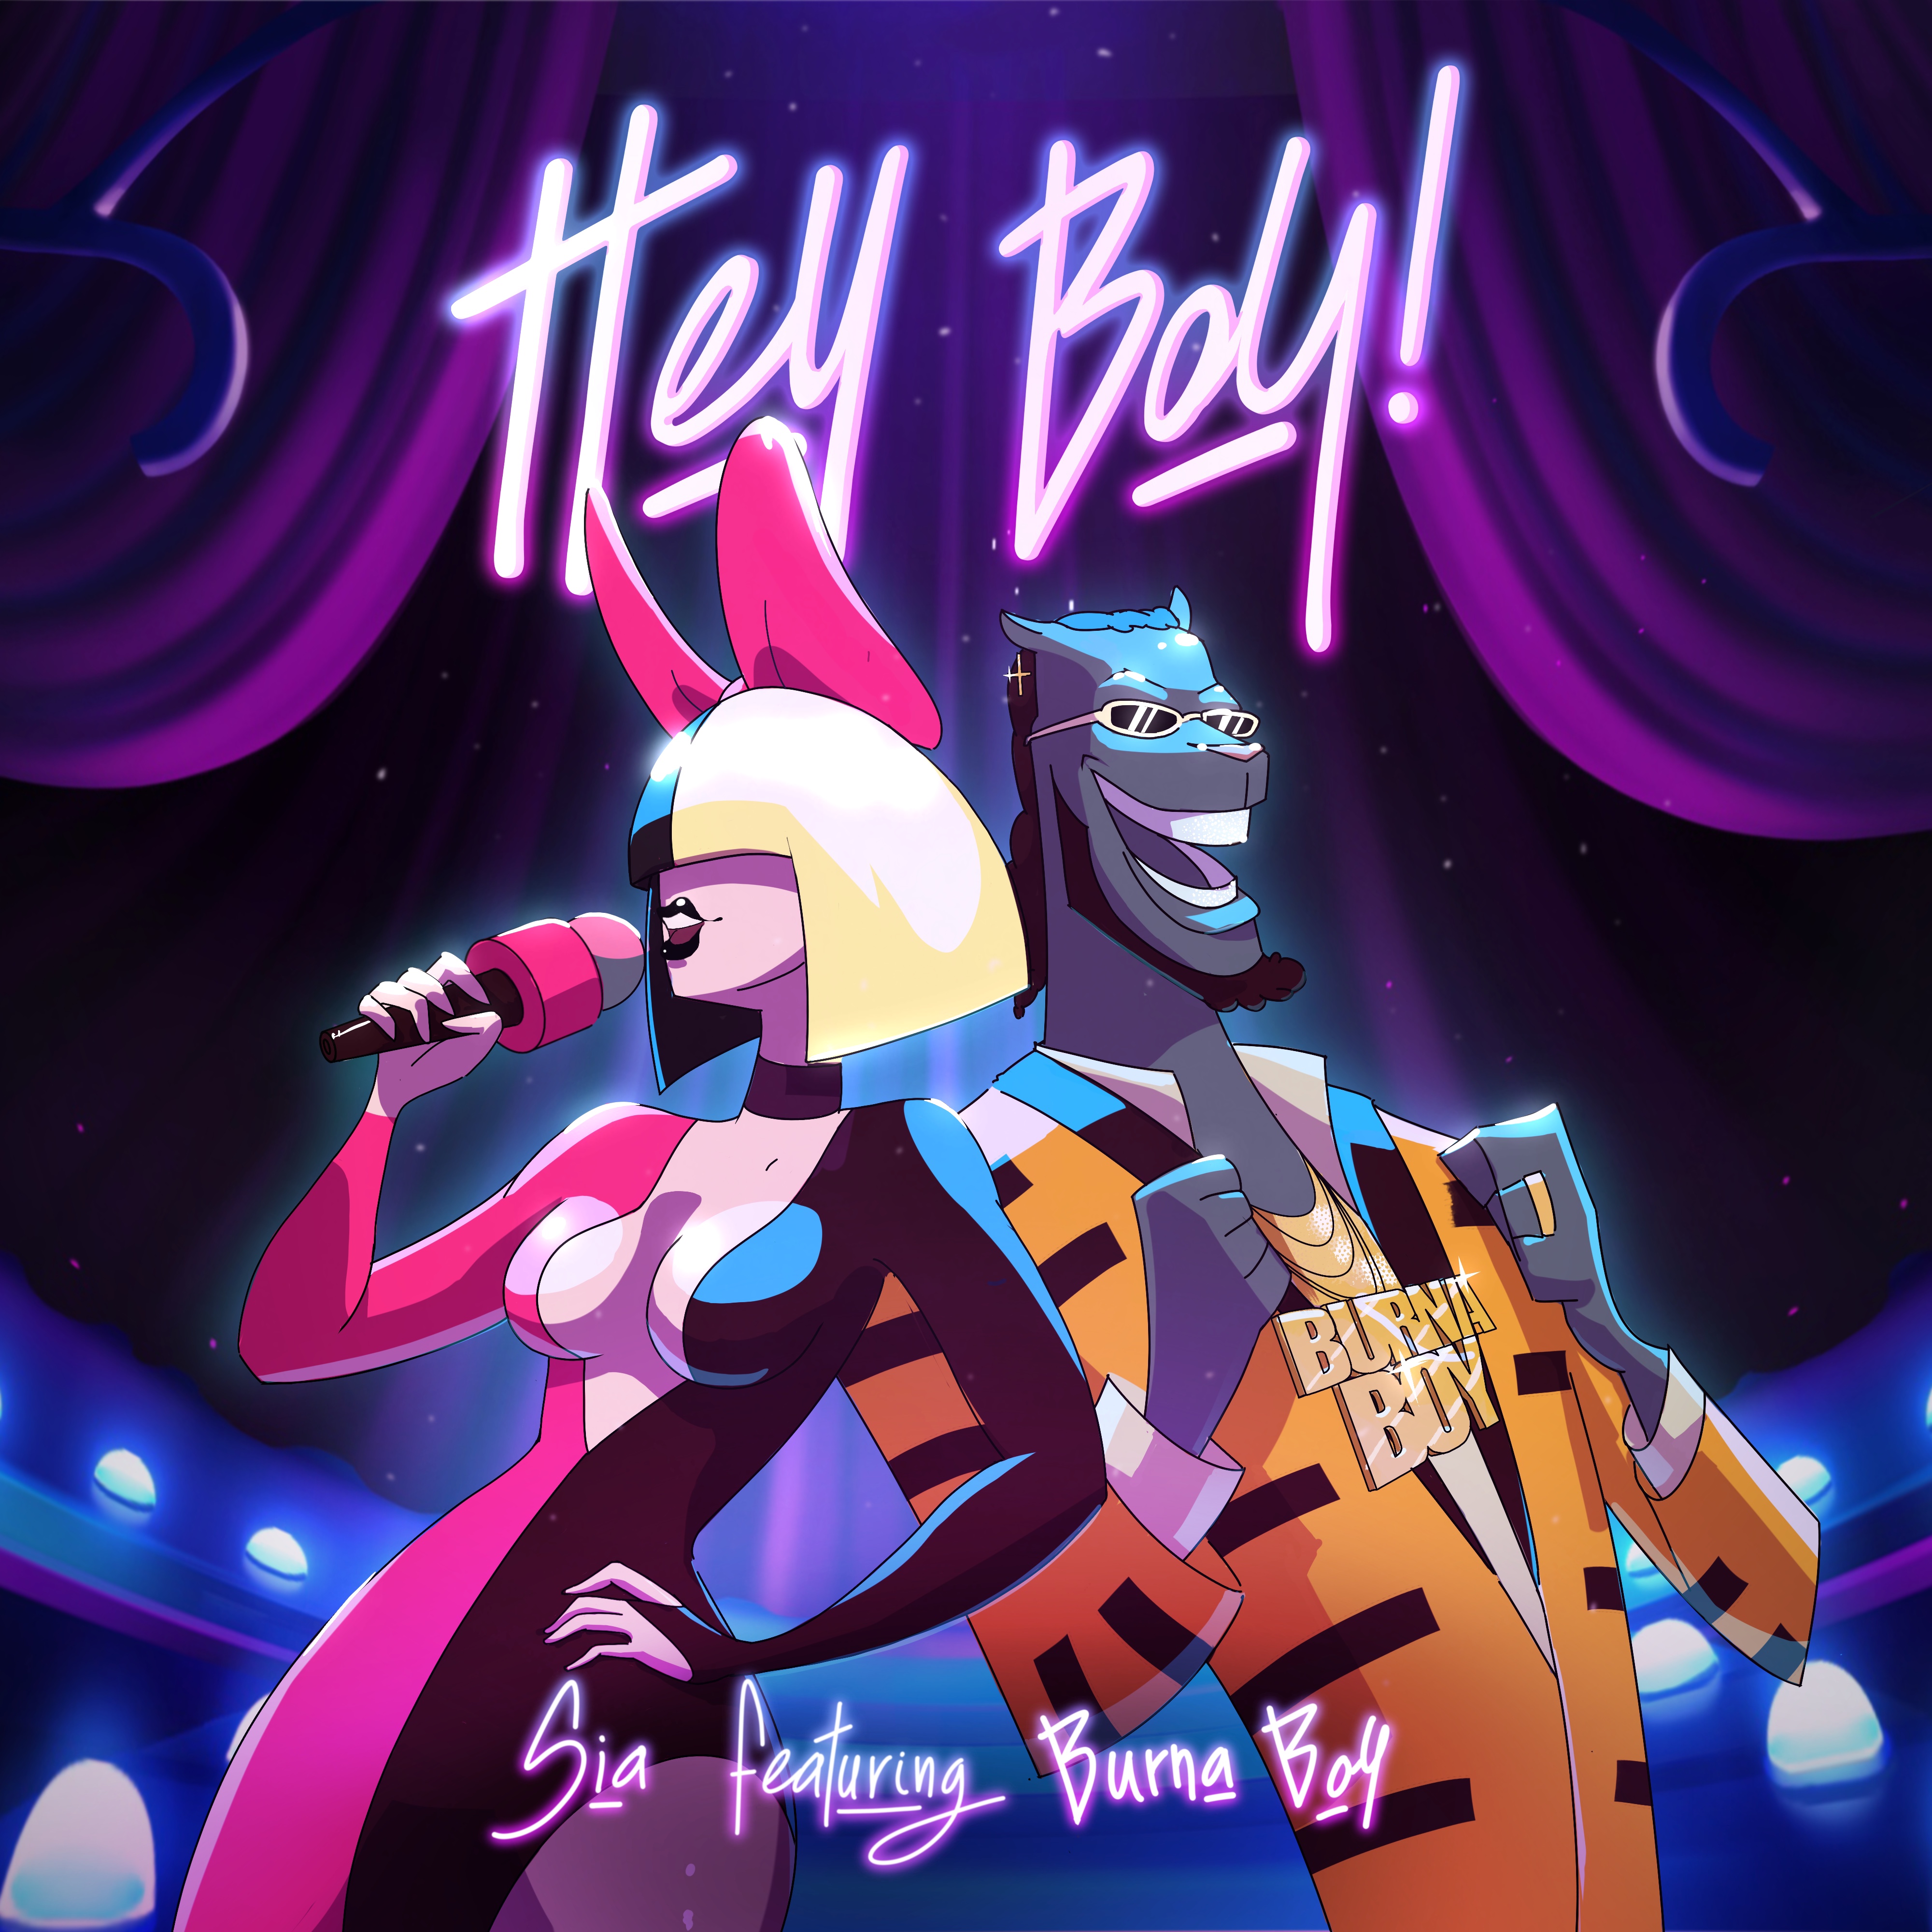 Sia estrena “Hey Boy” junto a Burna Boy